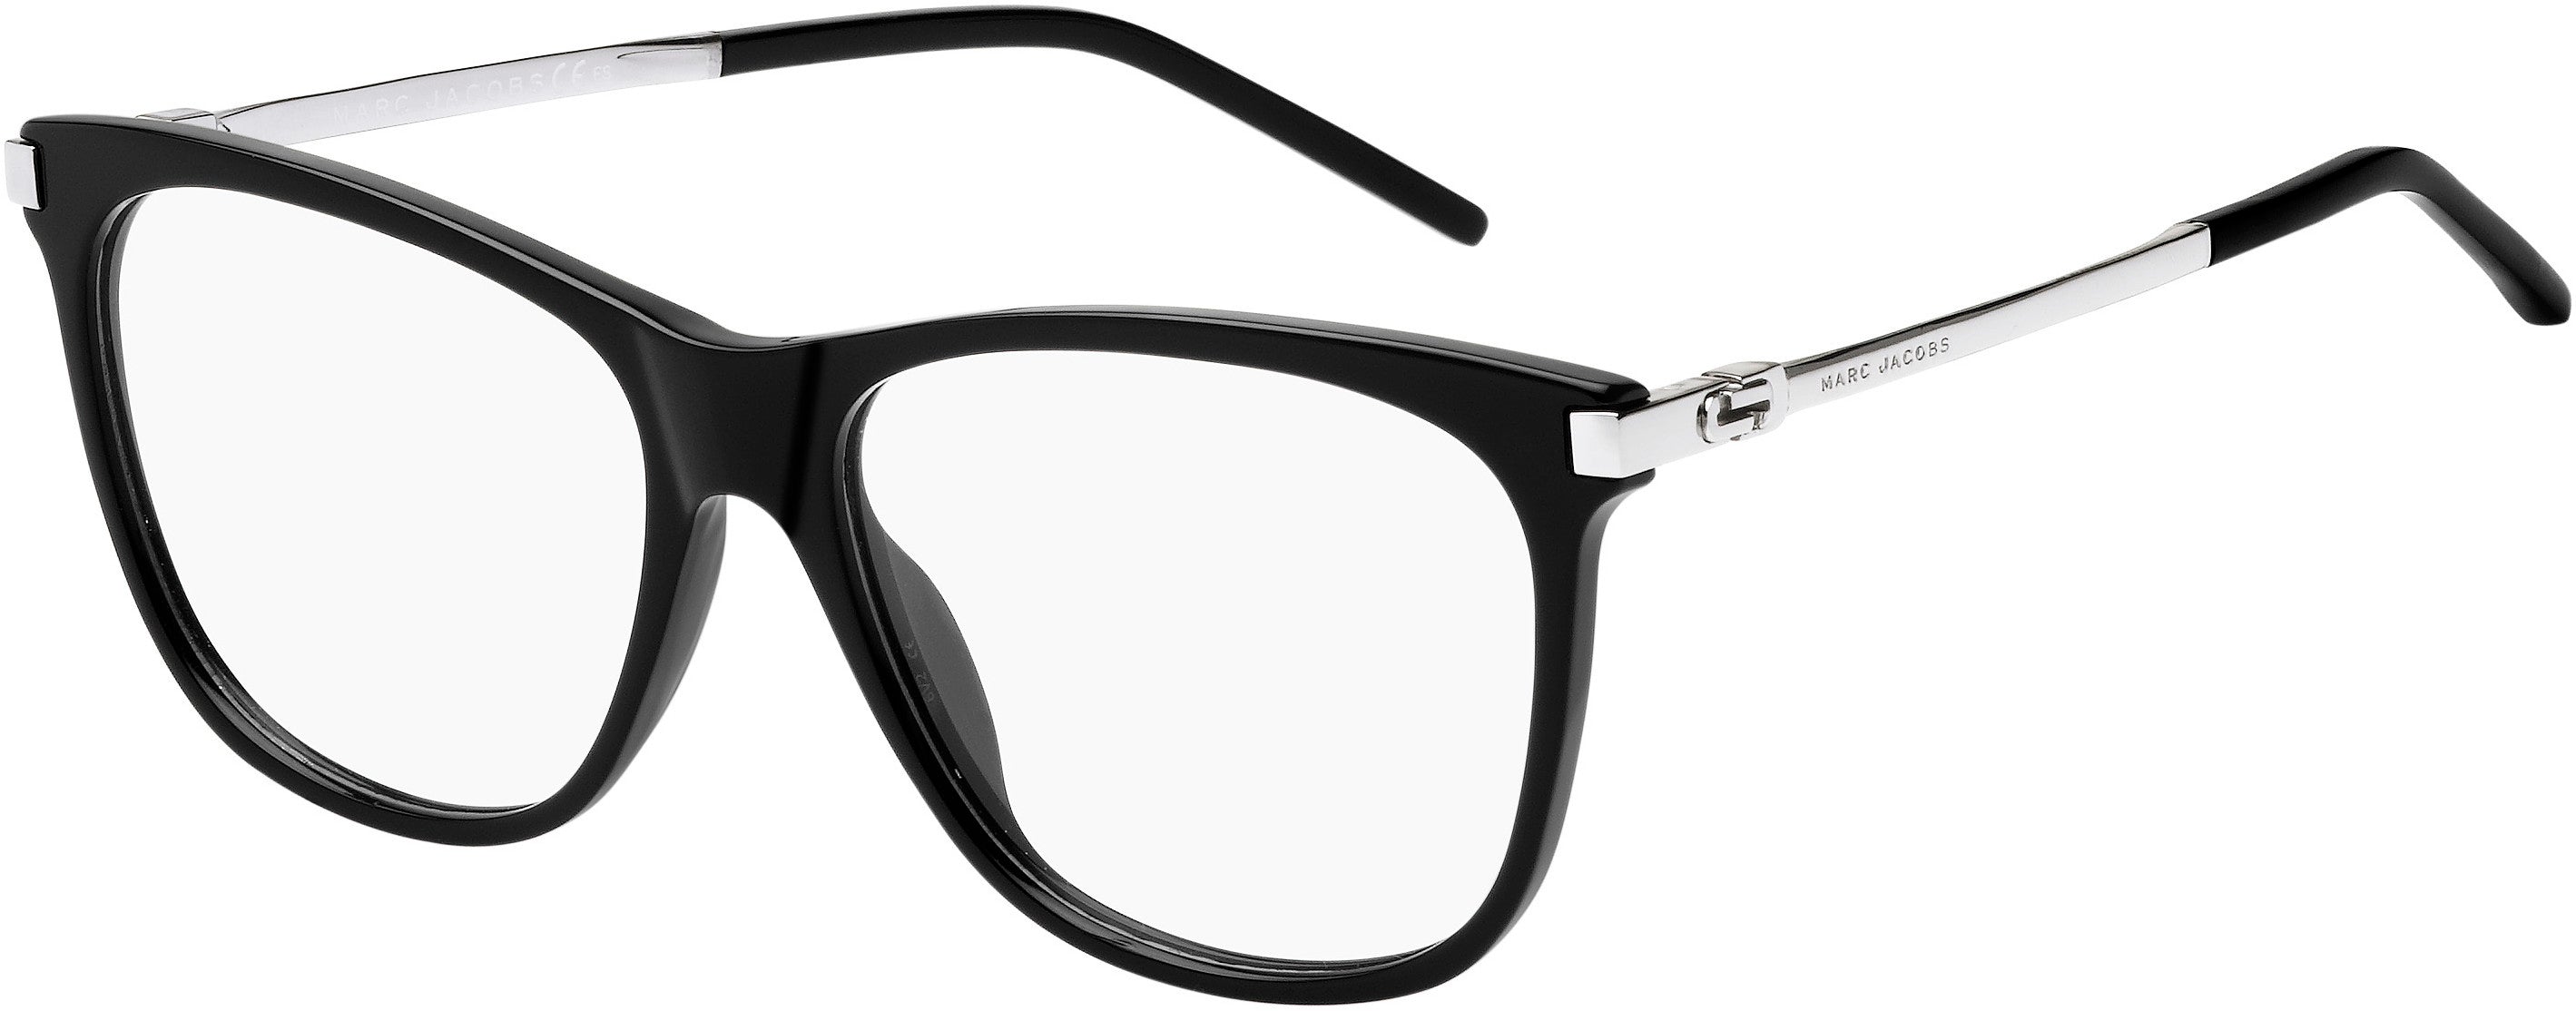 Marc Jacobs Marc 144 Square Eyeglasses 0CSA-0CSA  Black Palladium (00 Demo Lens)